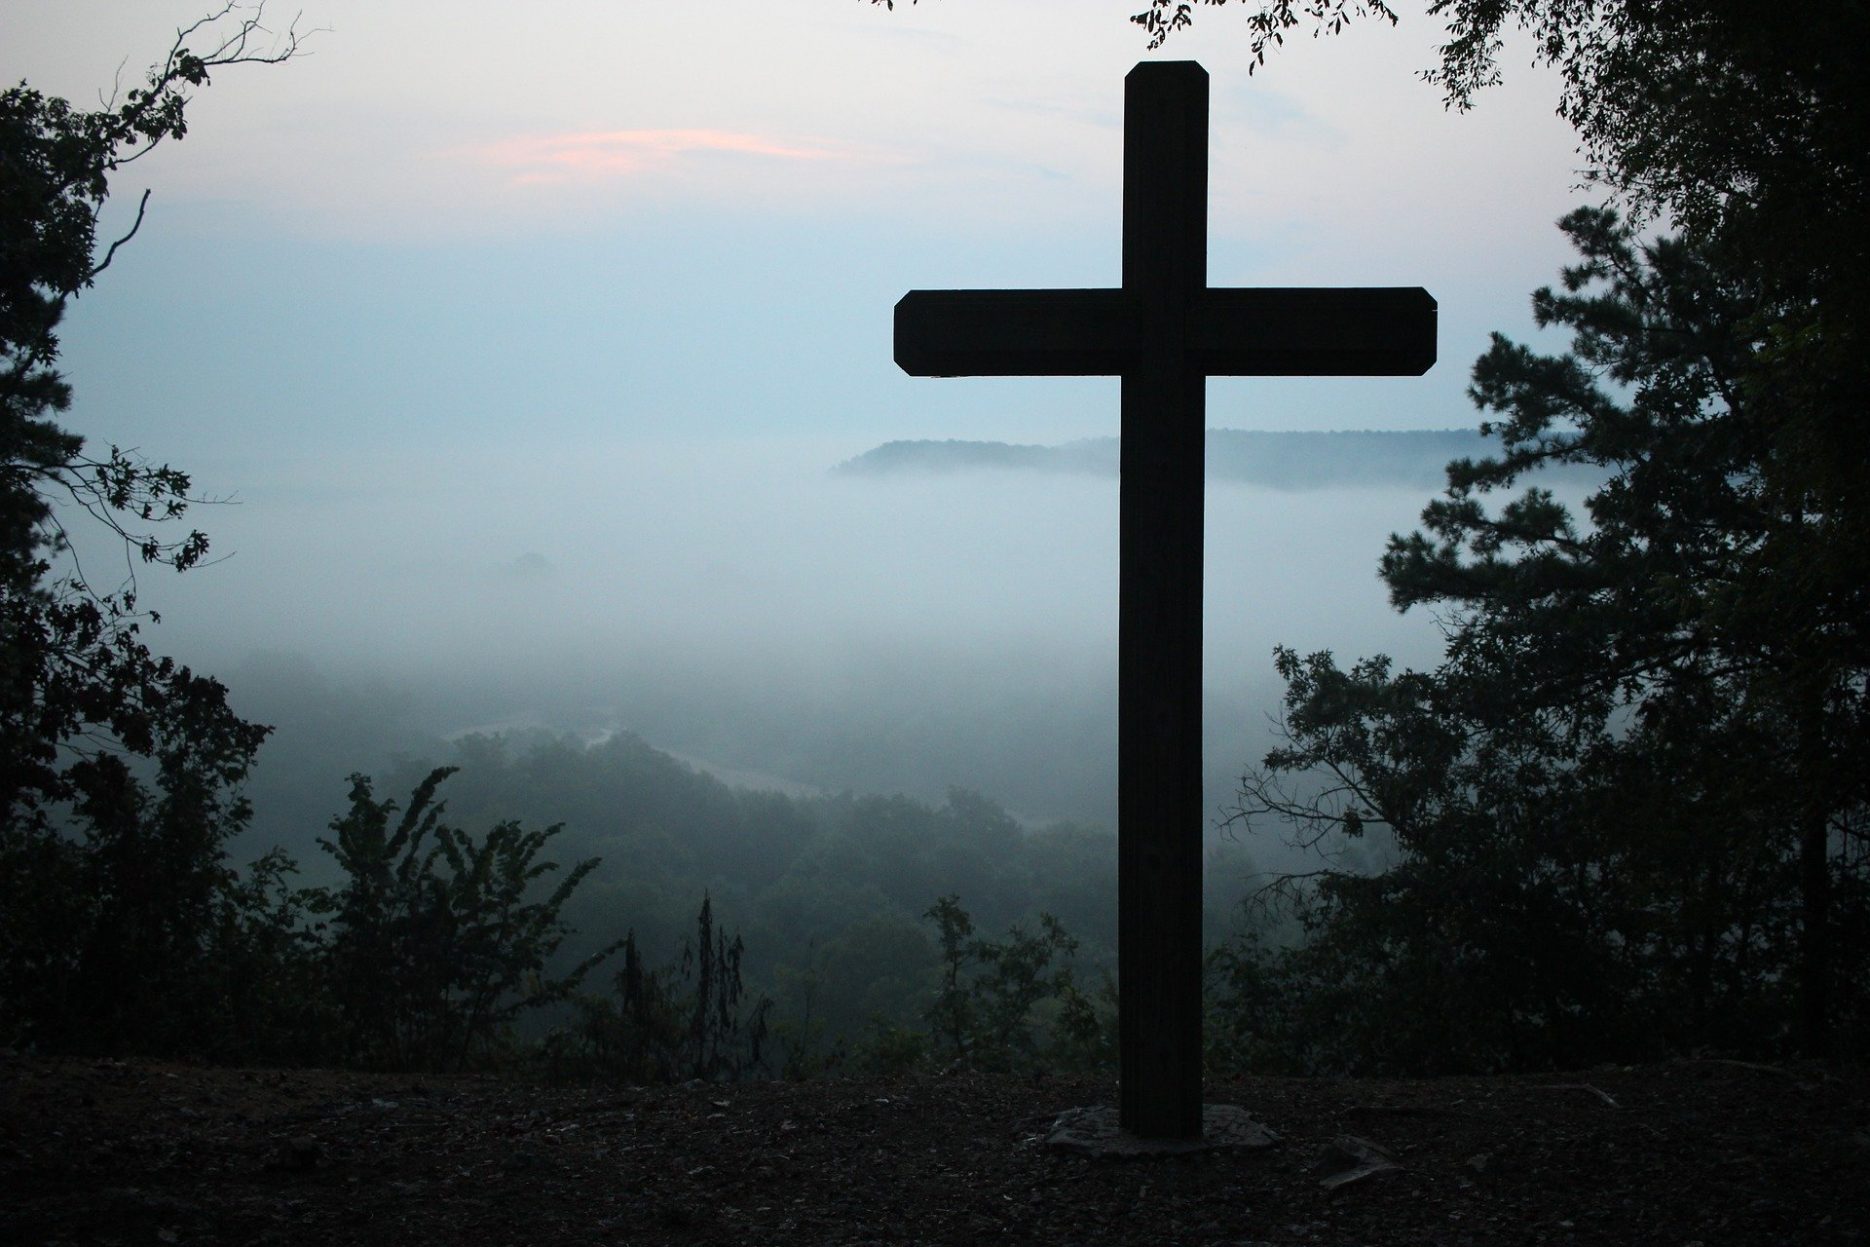 Das Bild zeigt ein großes Kreuz, das auf einem bewaldeten Berg aufgestellt ist. Im Hintergrund liegt das von Nebel bedeckte Tal.